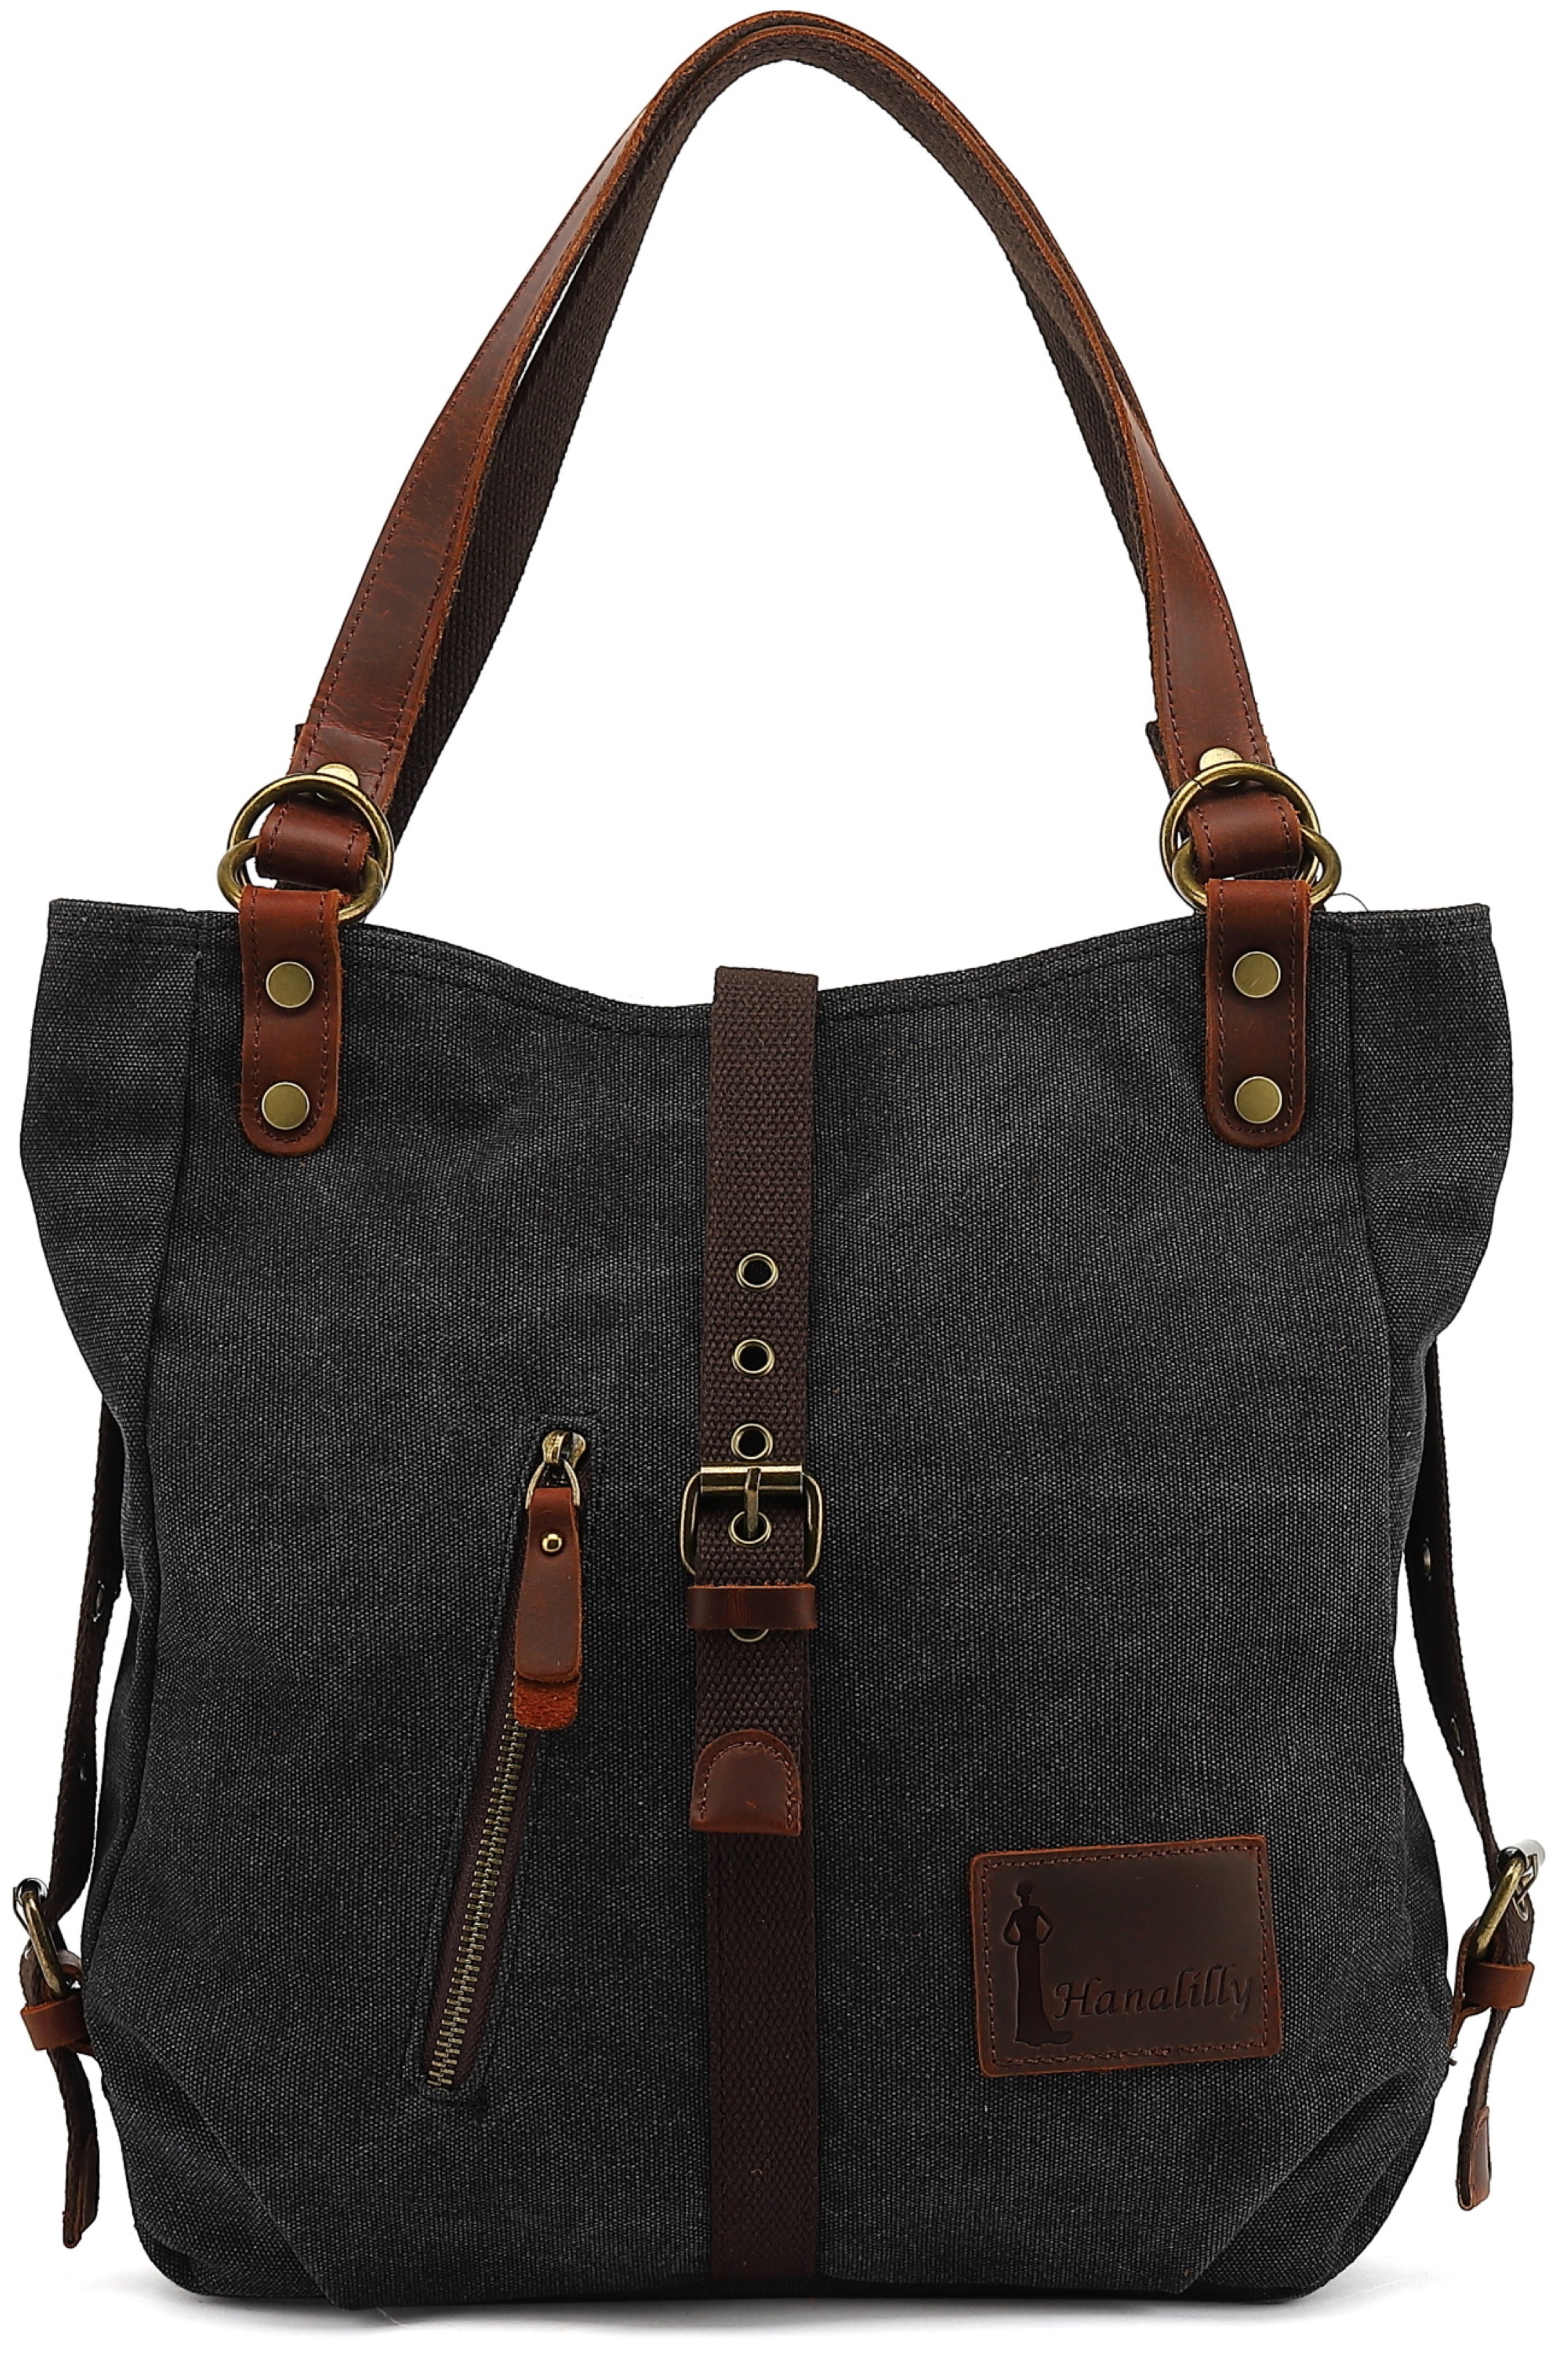 Hanalilly Handbag Shoulder Bag, Black Convertible Backpack Purse Tote ...